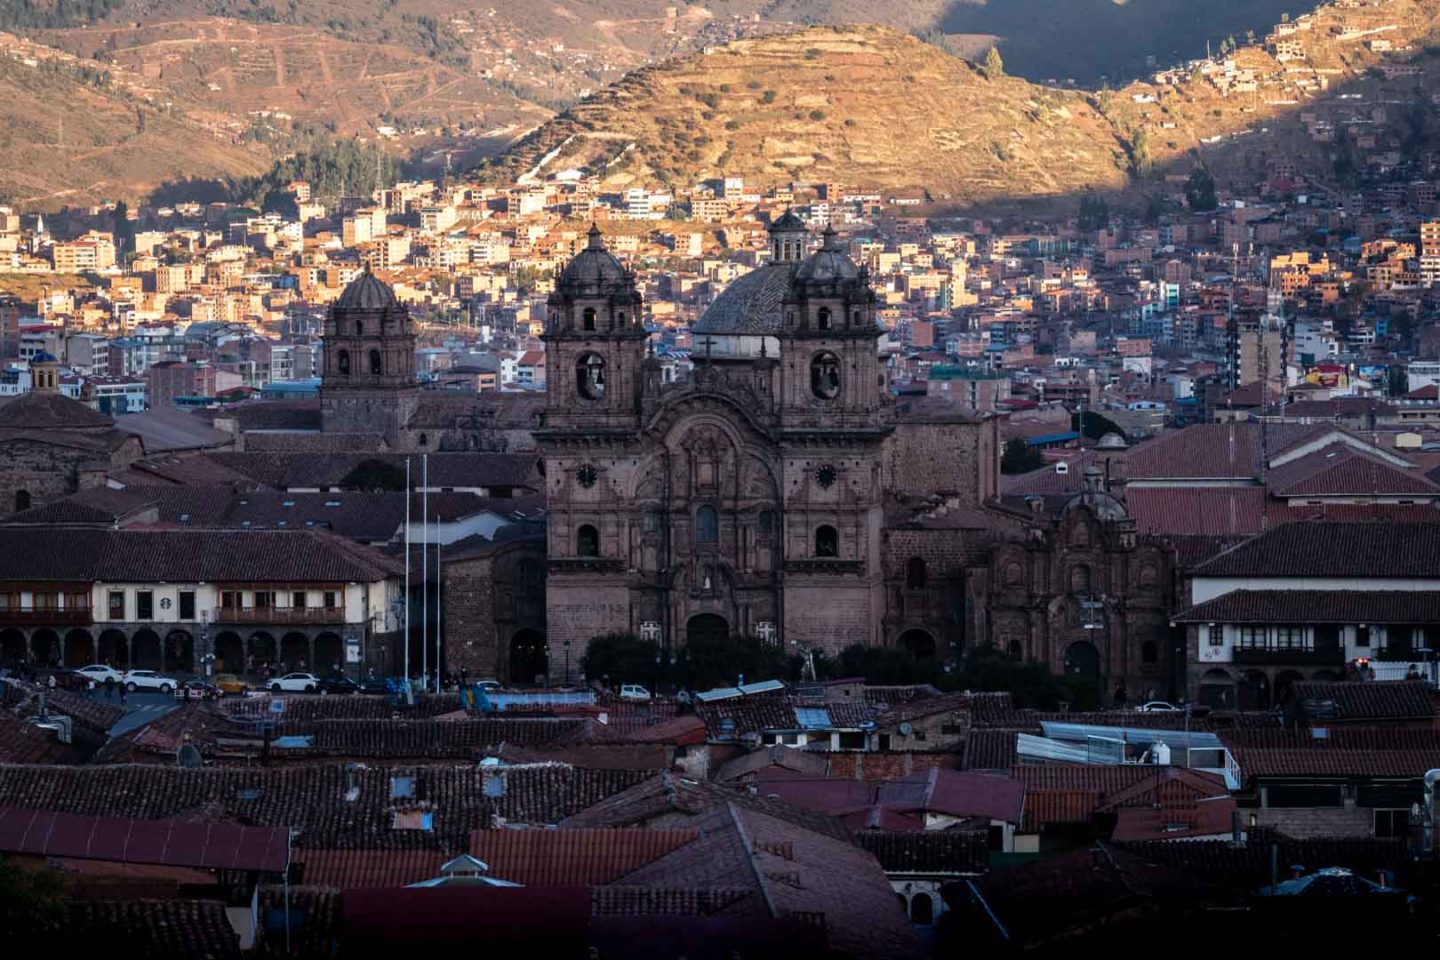 City of Cusco viewpoint, Peru